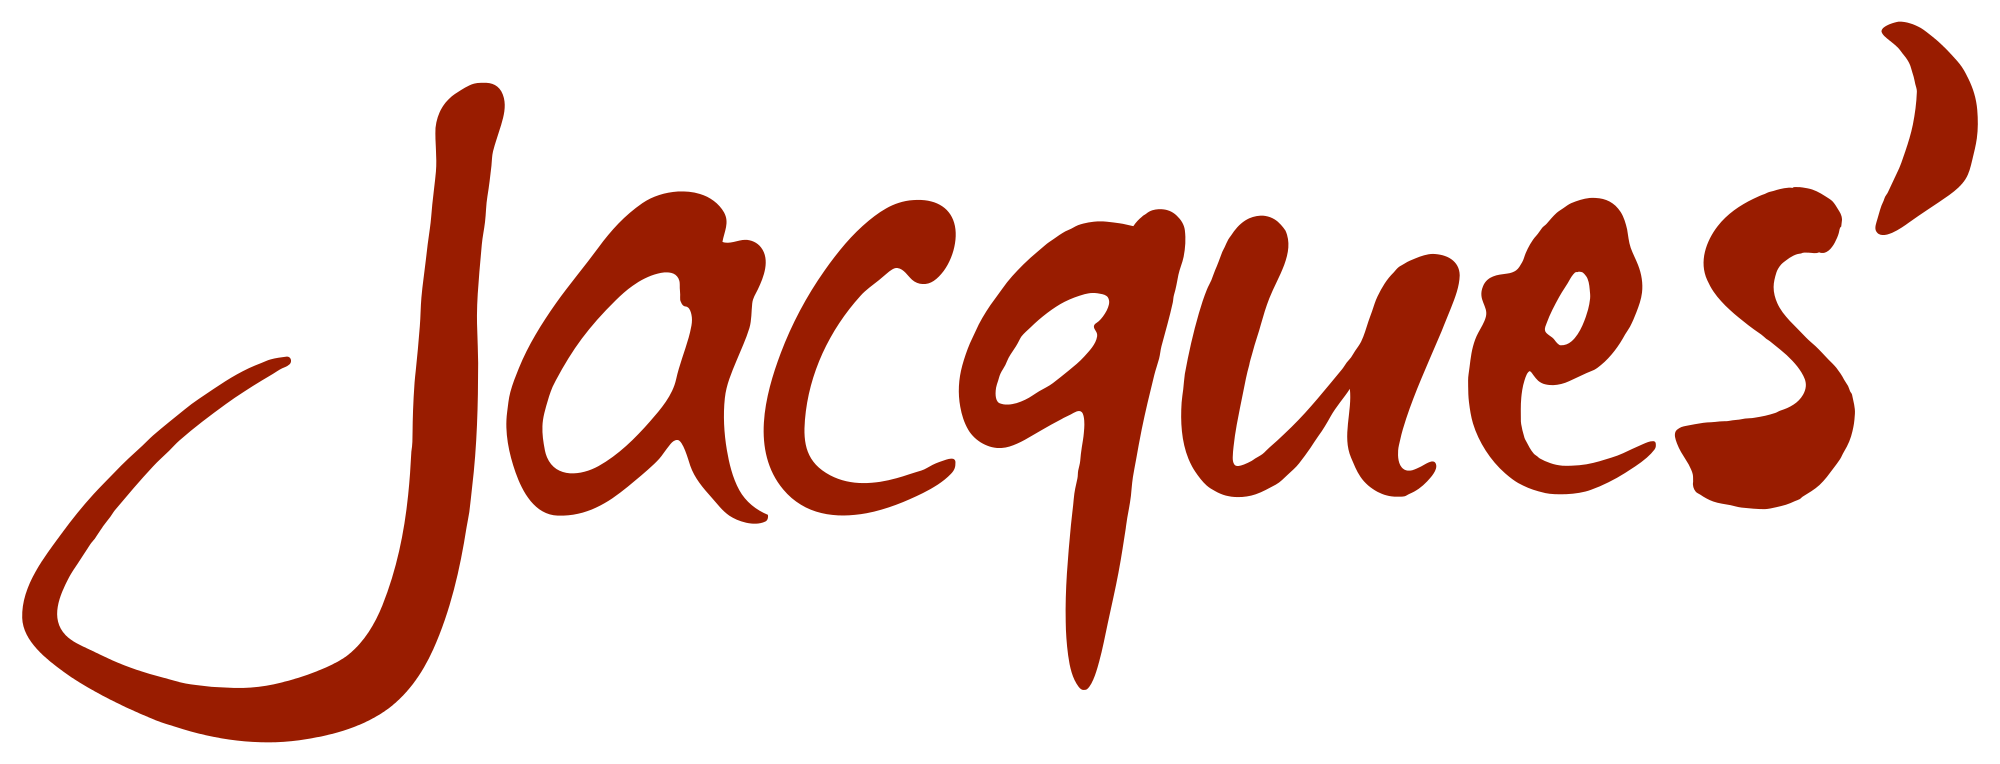 Jacques’_Wein-Depot_logo.svg